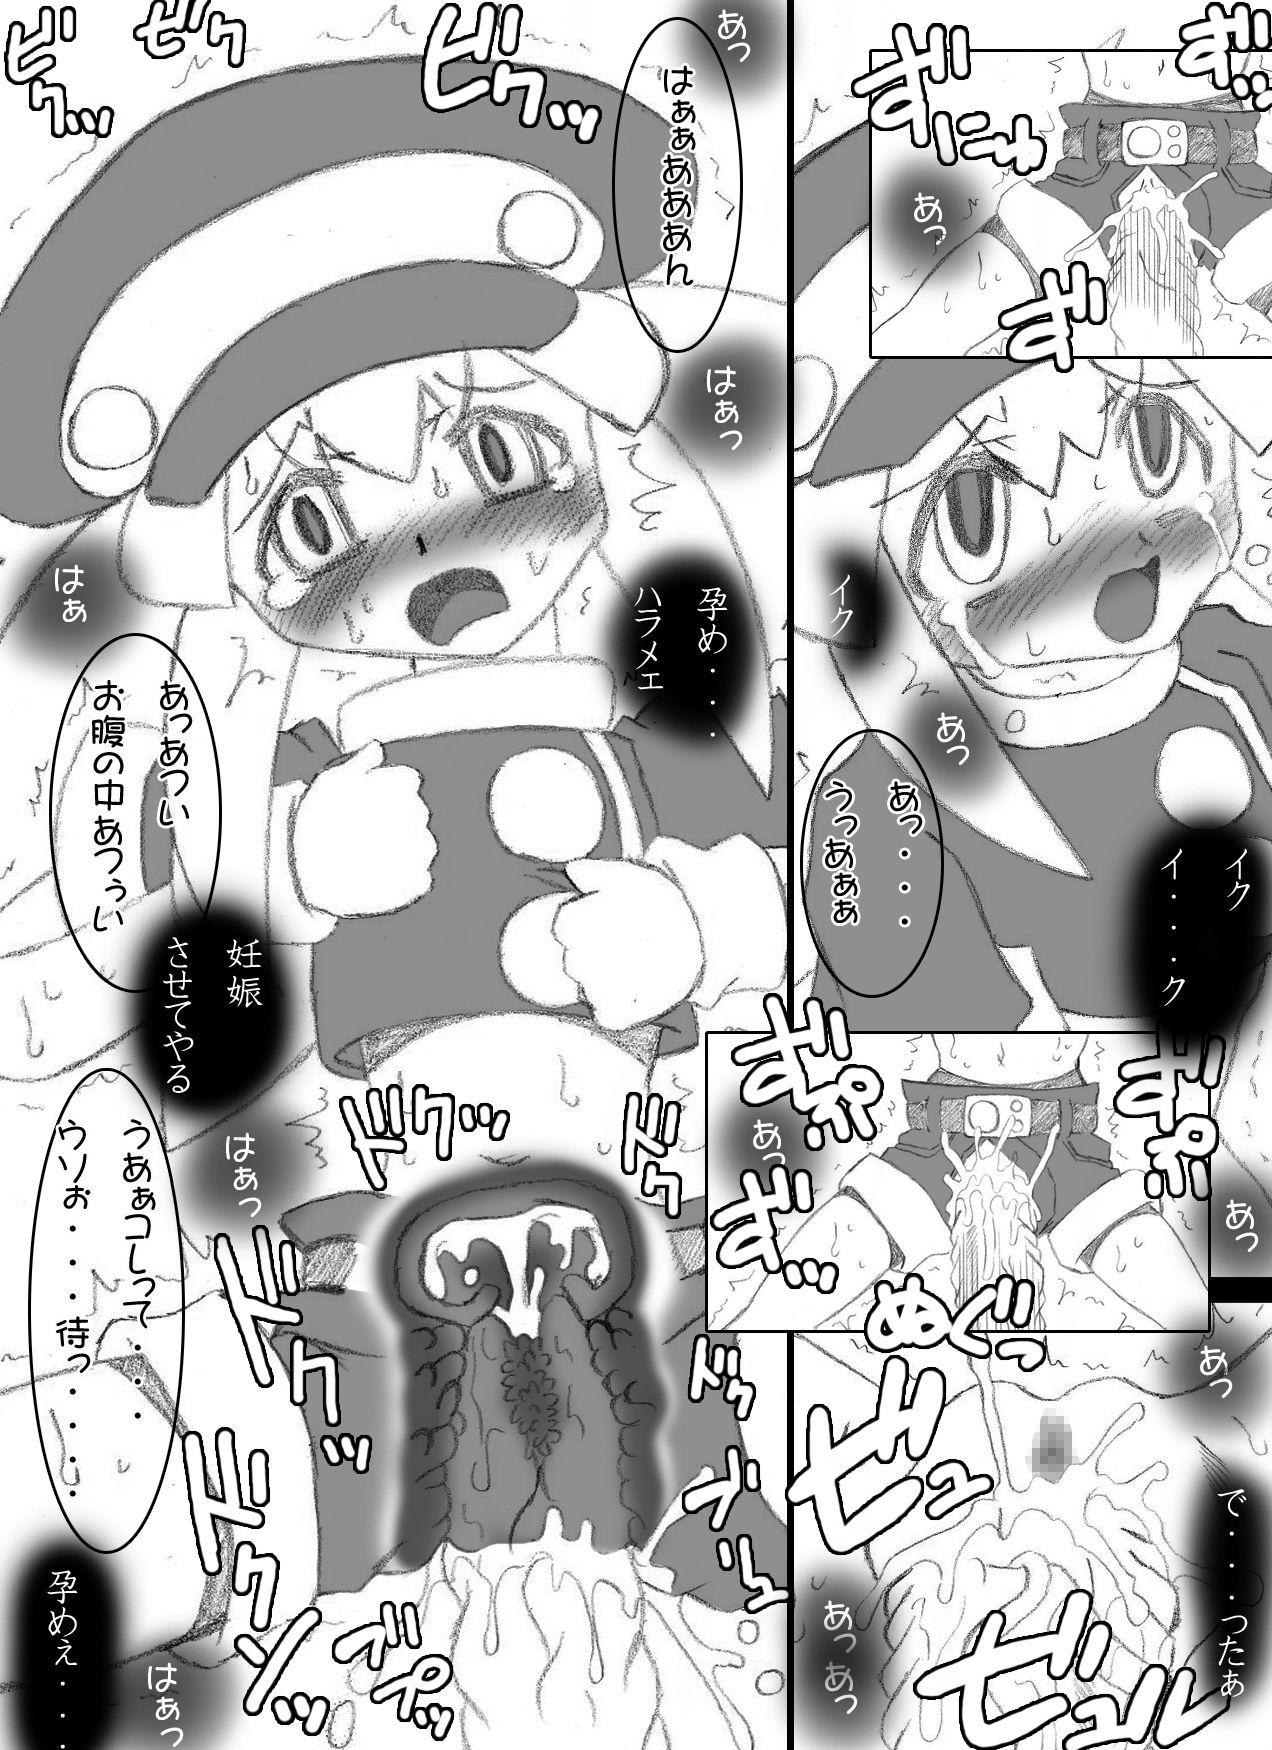 Thick Atataka na Chitsu no Naka no Soushitsu - Mega man legends First Time - Page 6